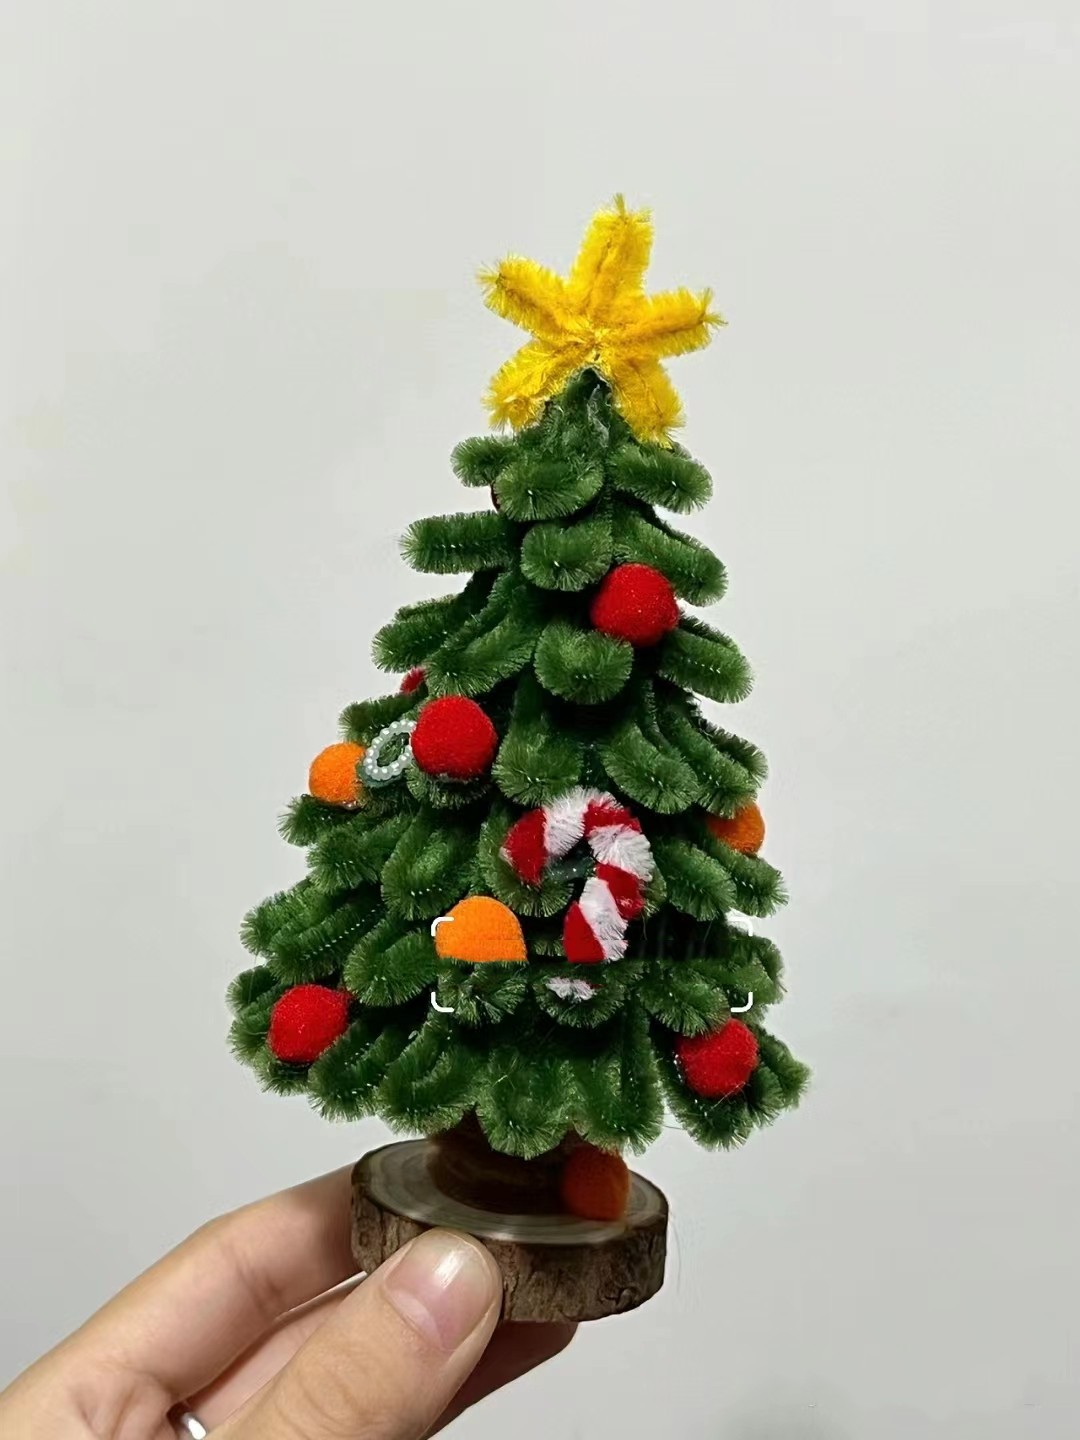 小红书DIY圣诞树创意手工扭扭棒圣诞节装饰幼儿园学生手作材料包 - 图1